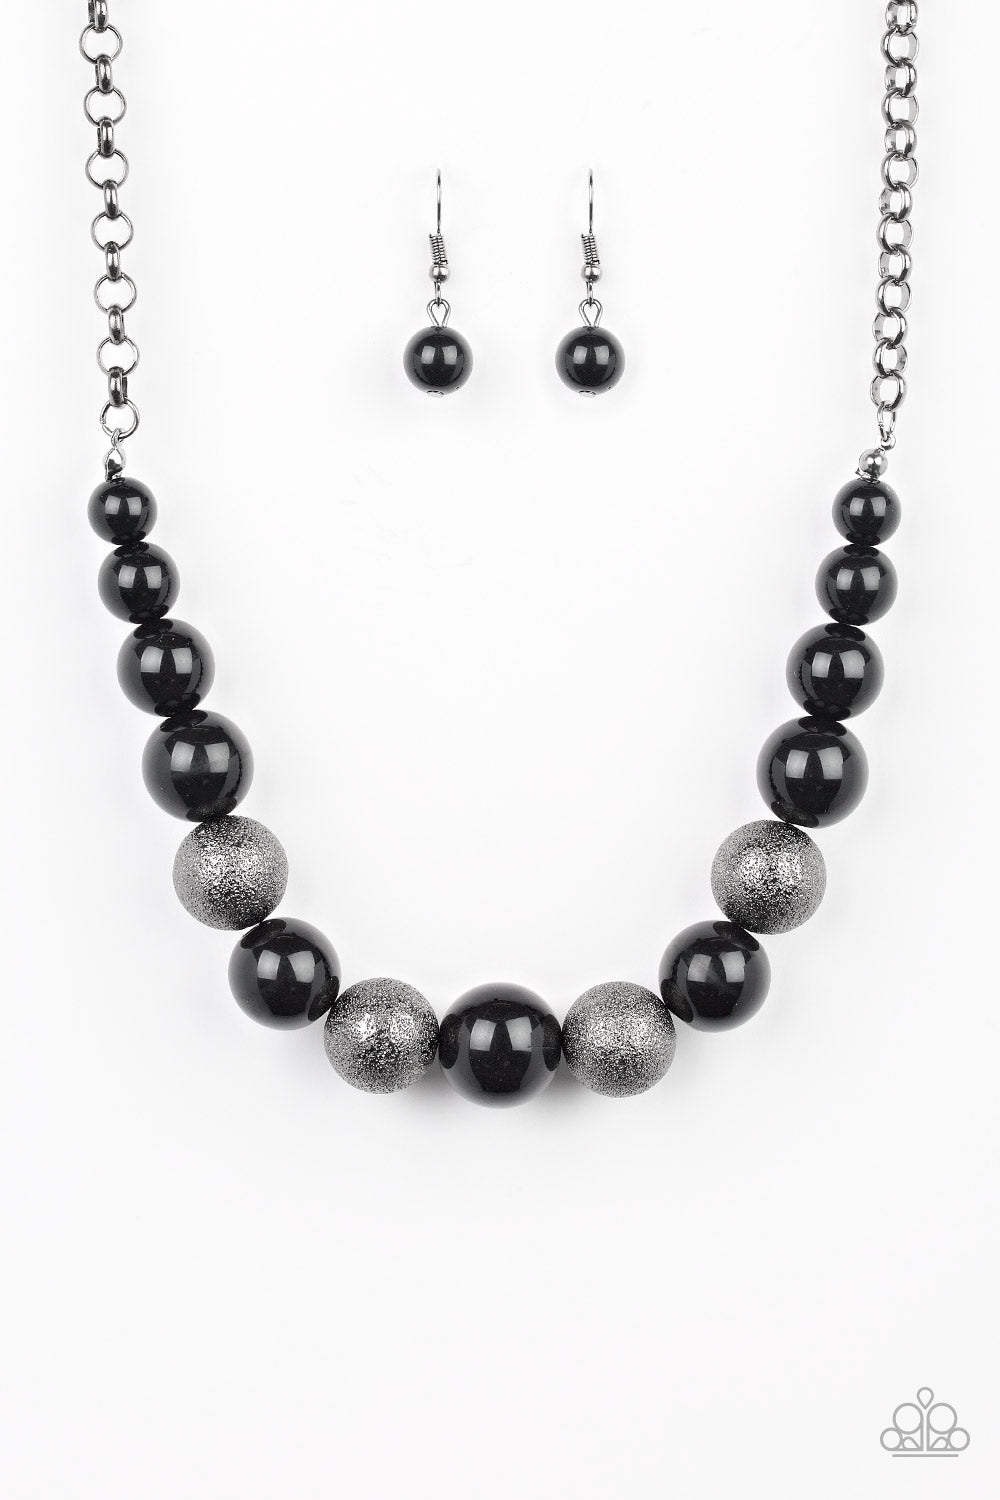 Paparazzi Accessories Color Me CEO - Black Necklaces - Lady T Accessories